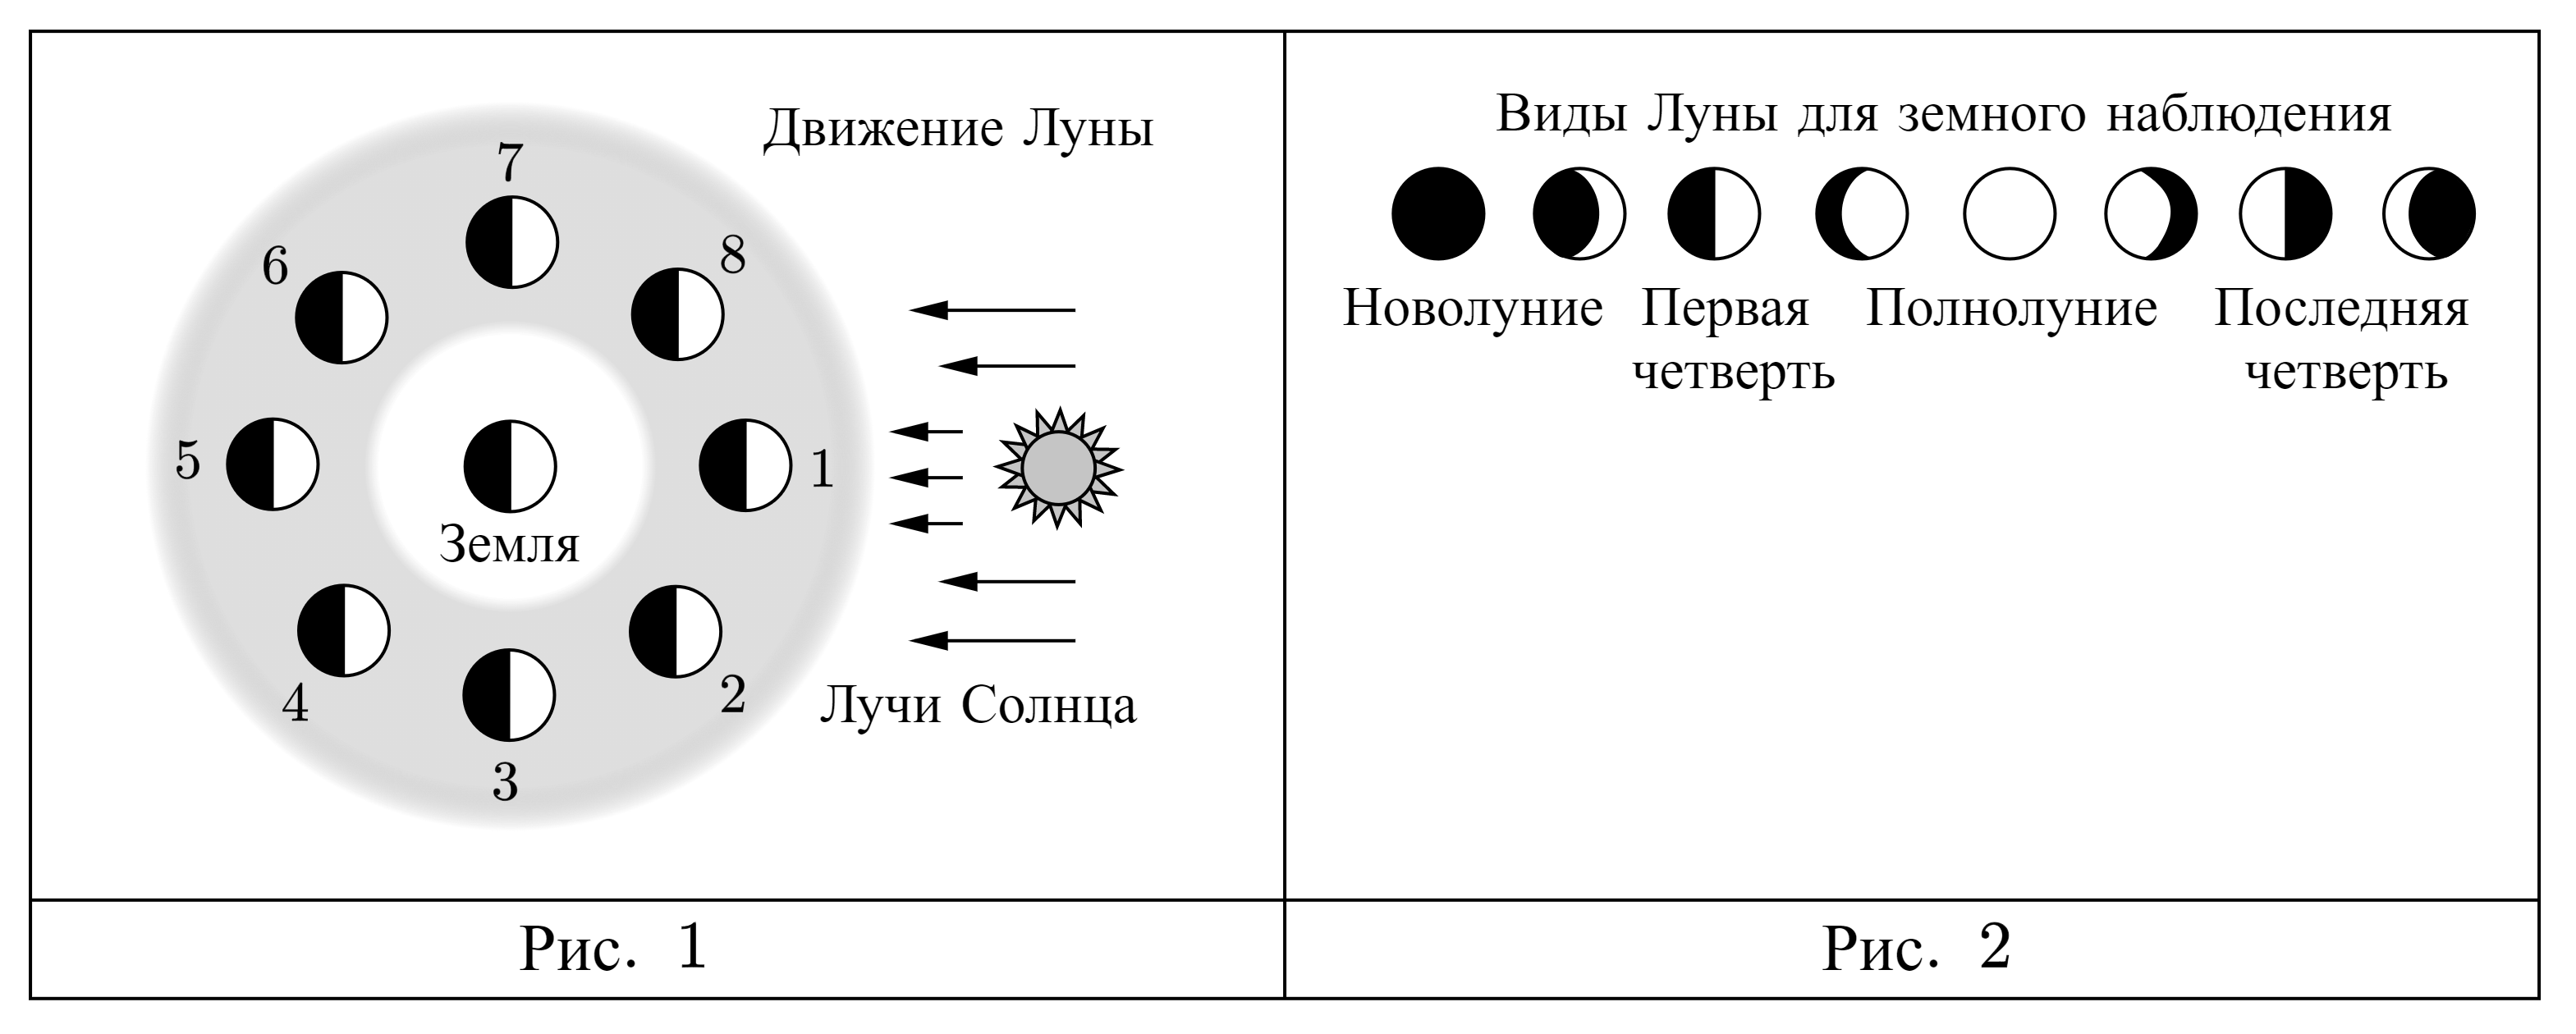 На рисунке представлена схема движения луны